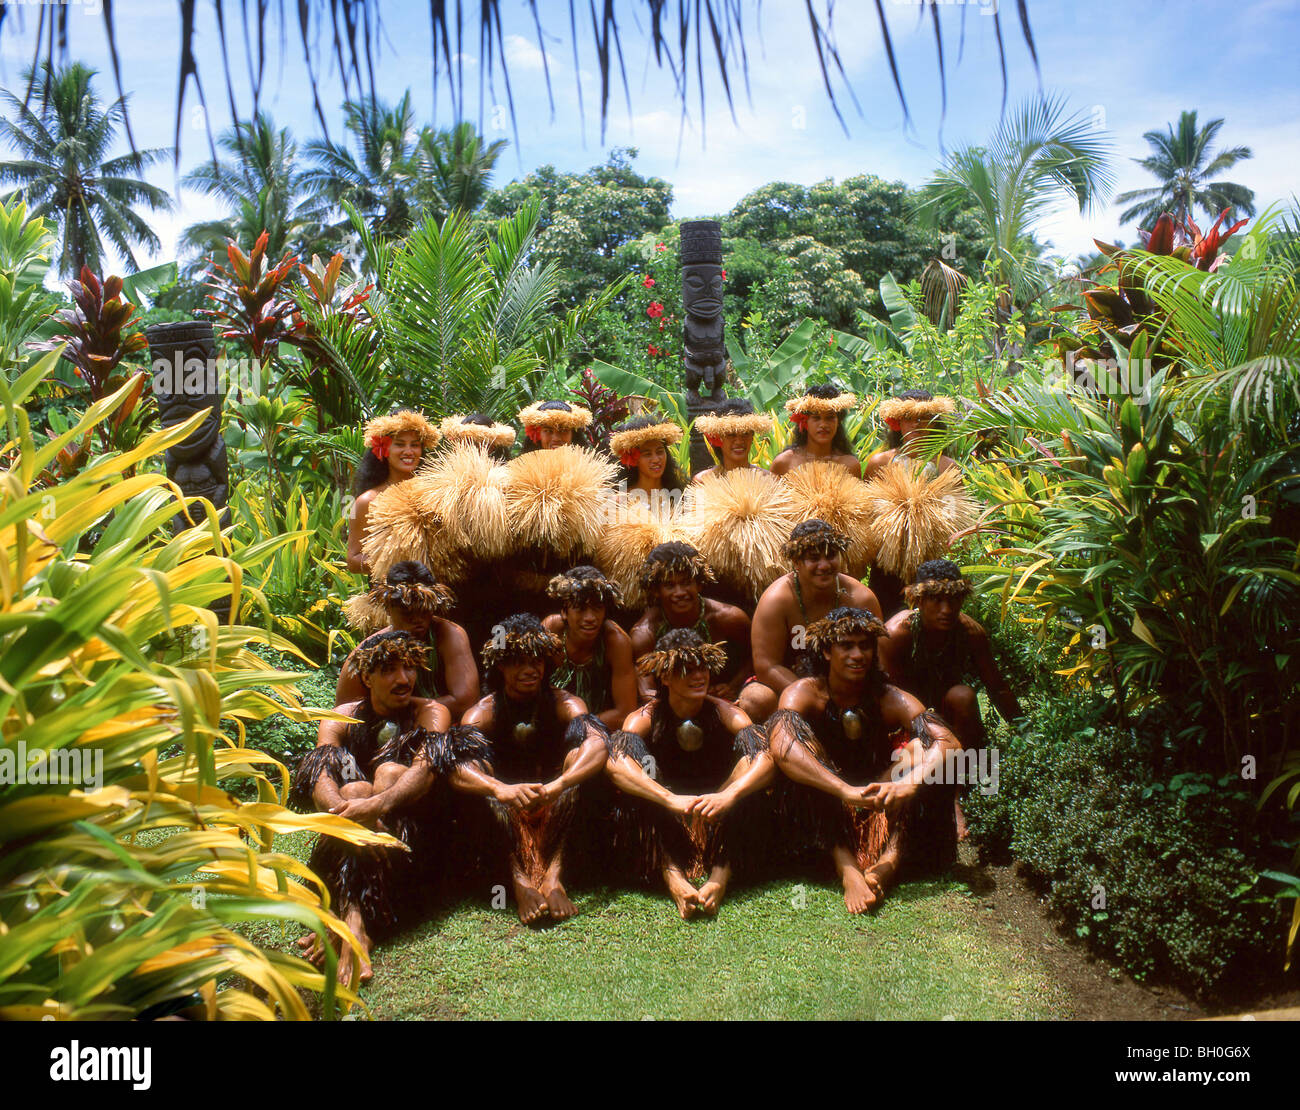 La compañía de danzas polinesias en jardines, Rarotonga, Islas Cook Foto de stock